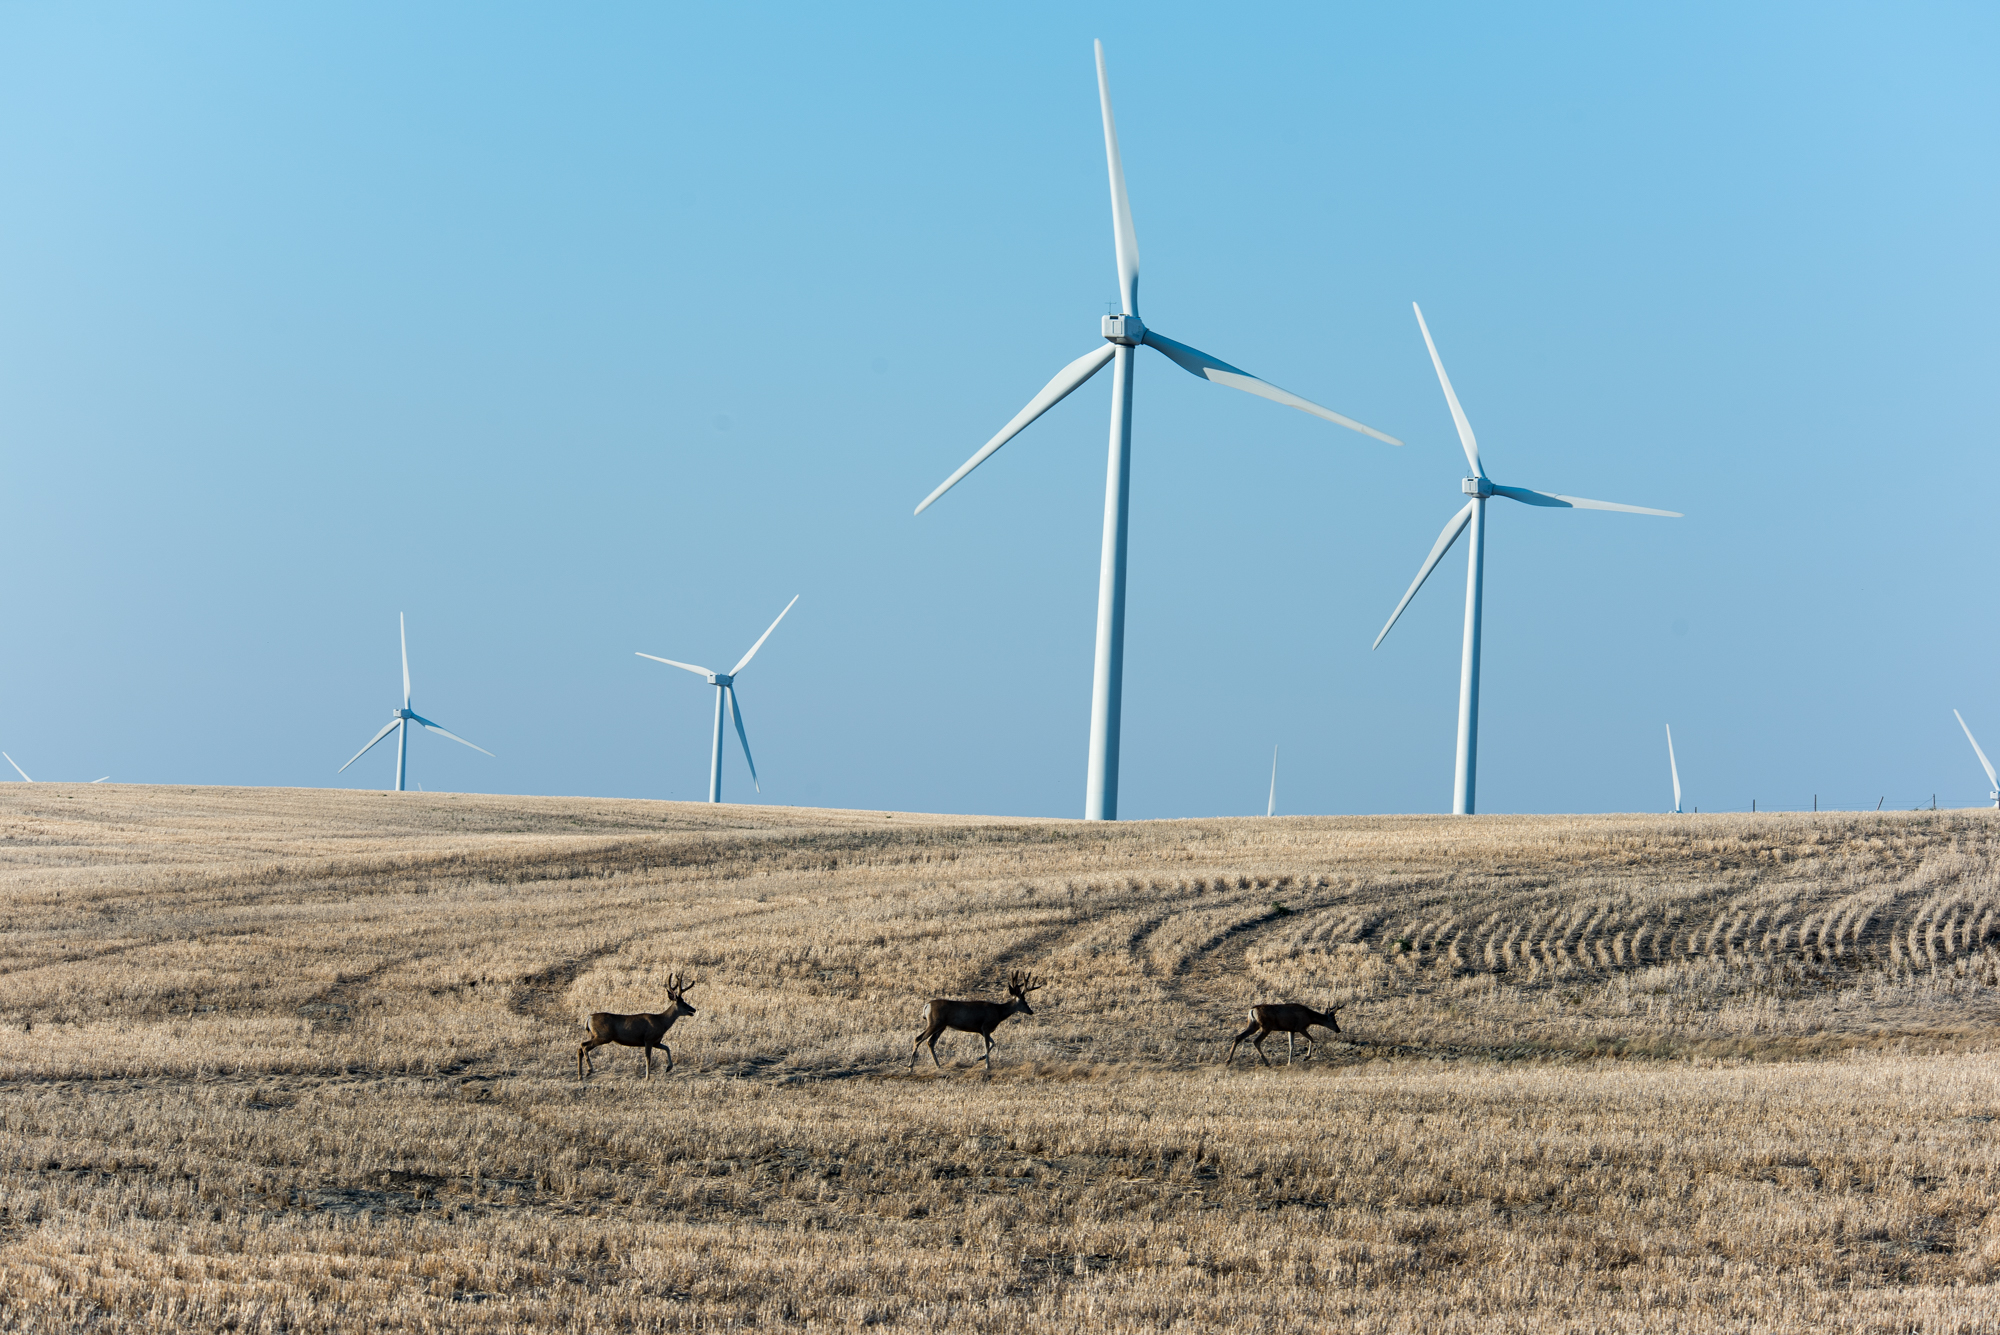 Mule deer bucks walk across a wind farm.